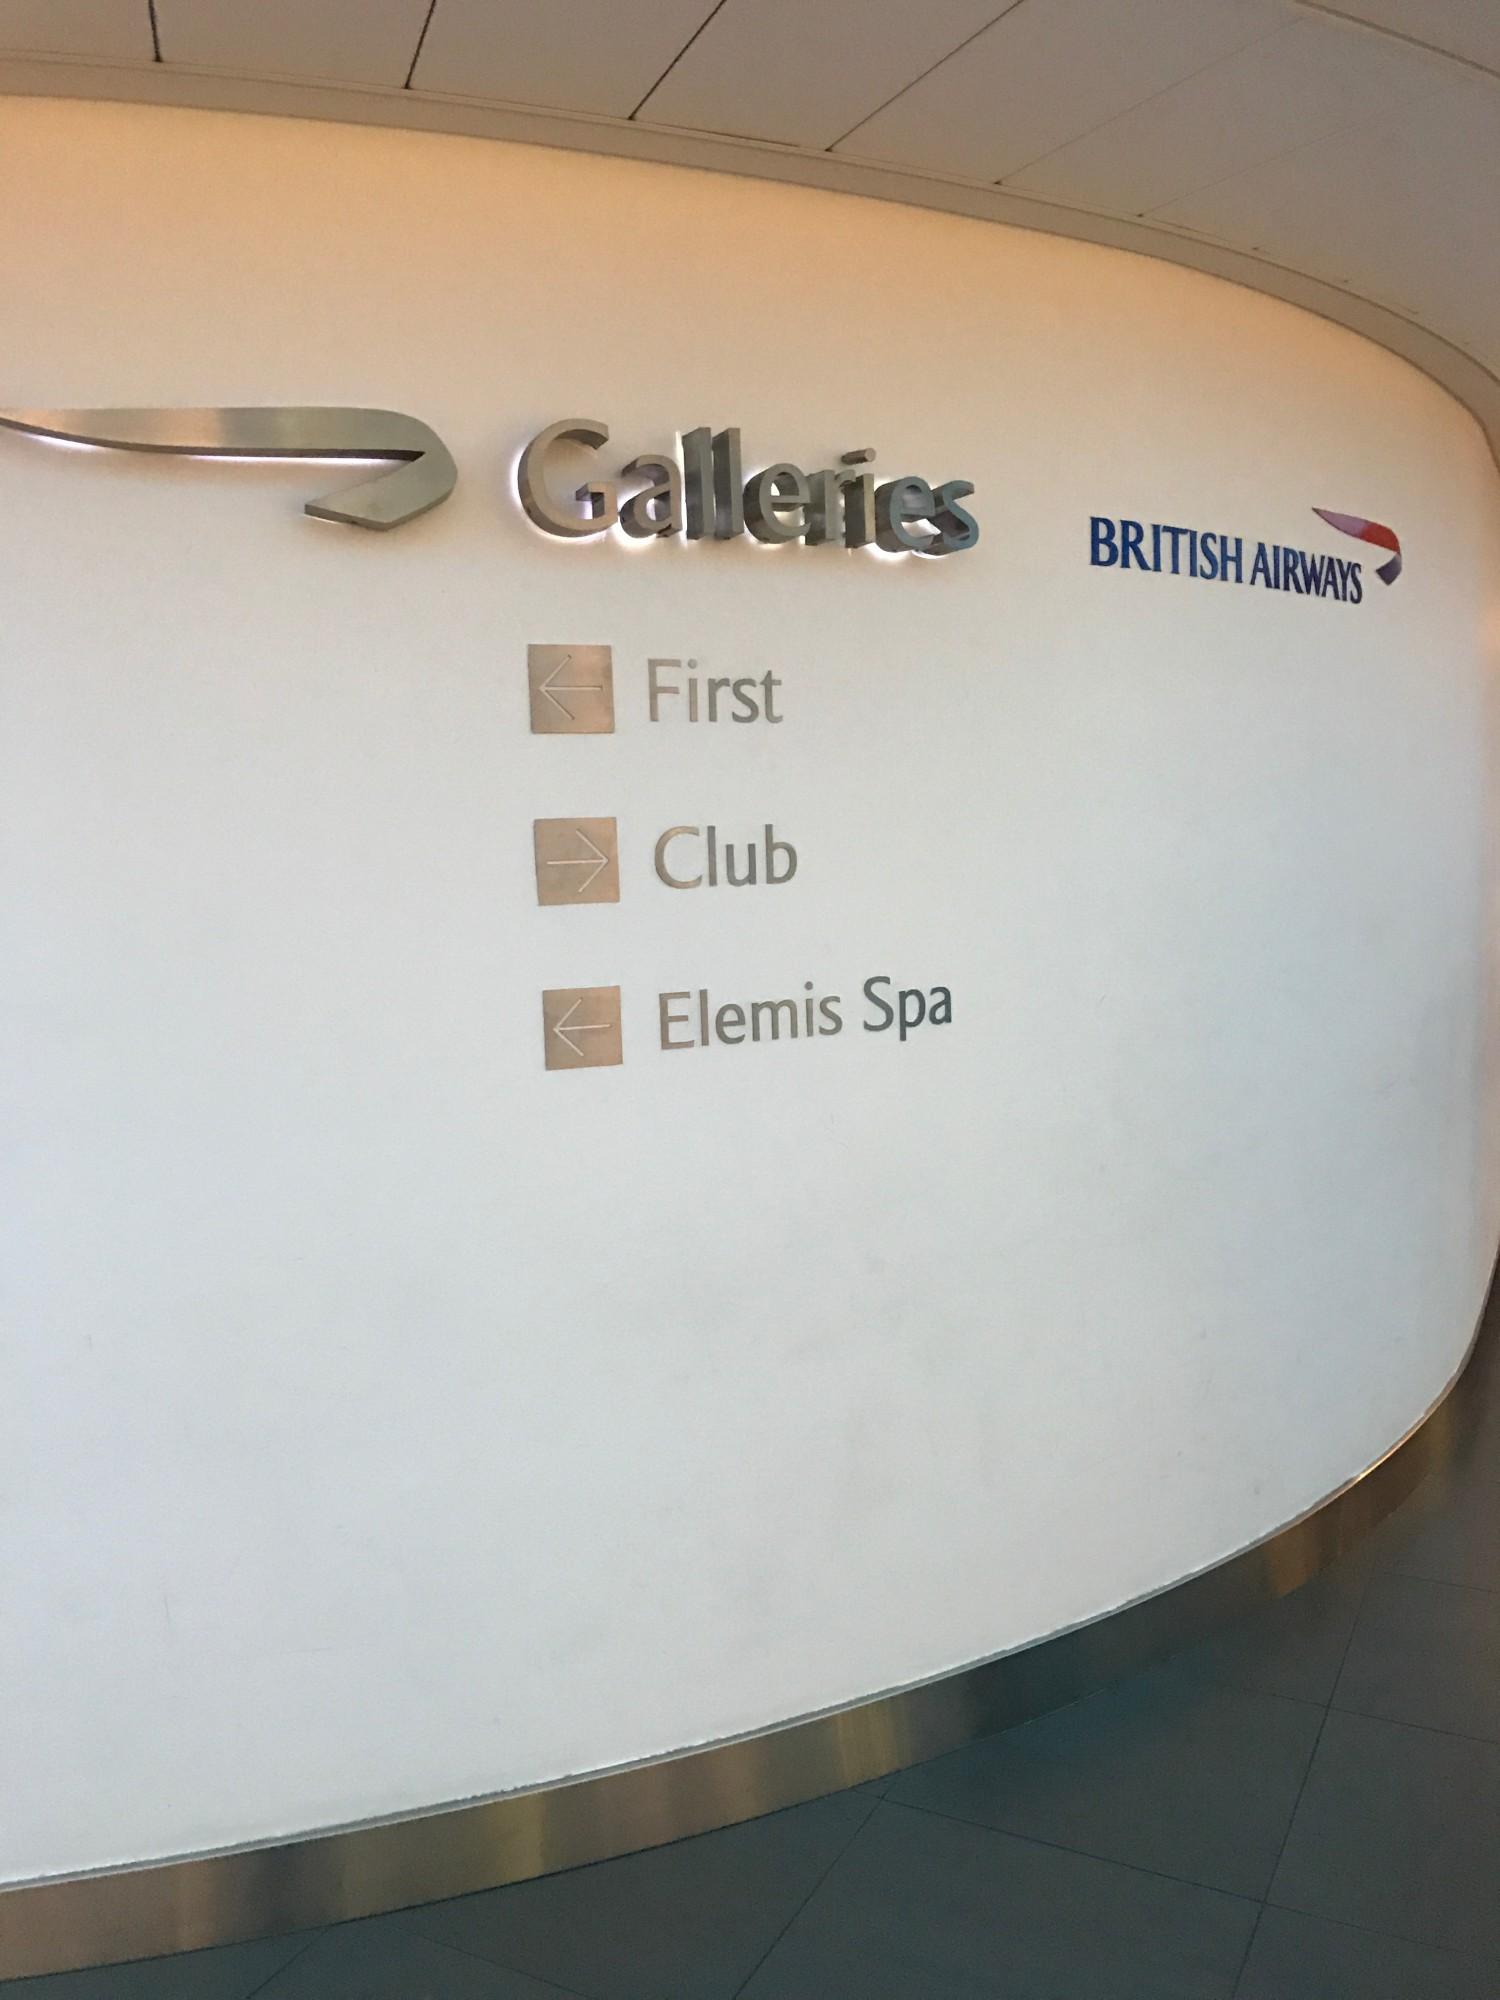 British Airways Galleries First Lounge image 26 of 38